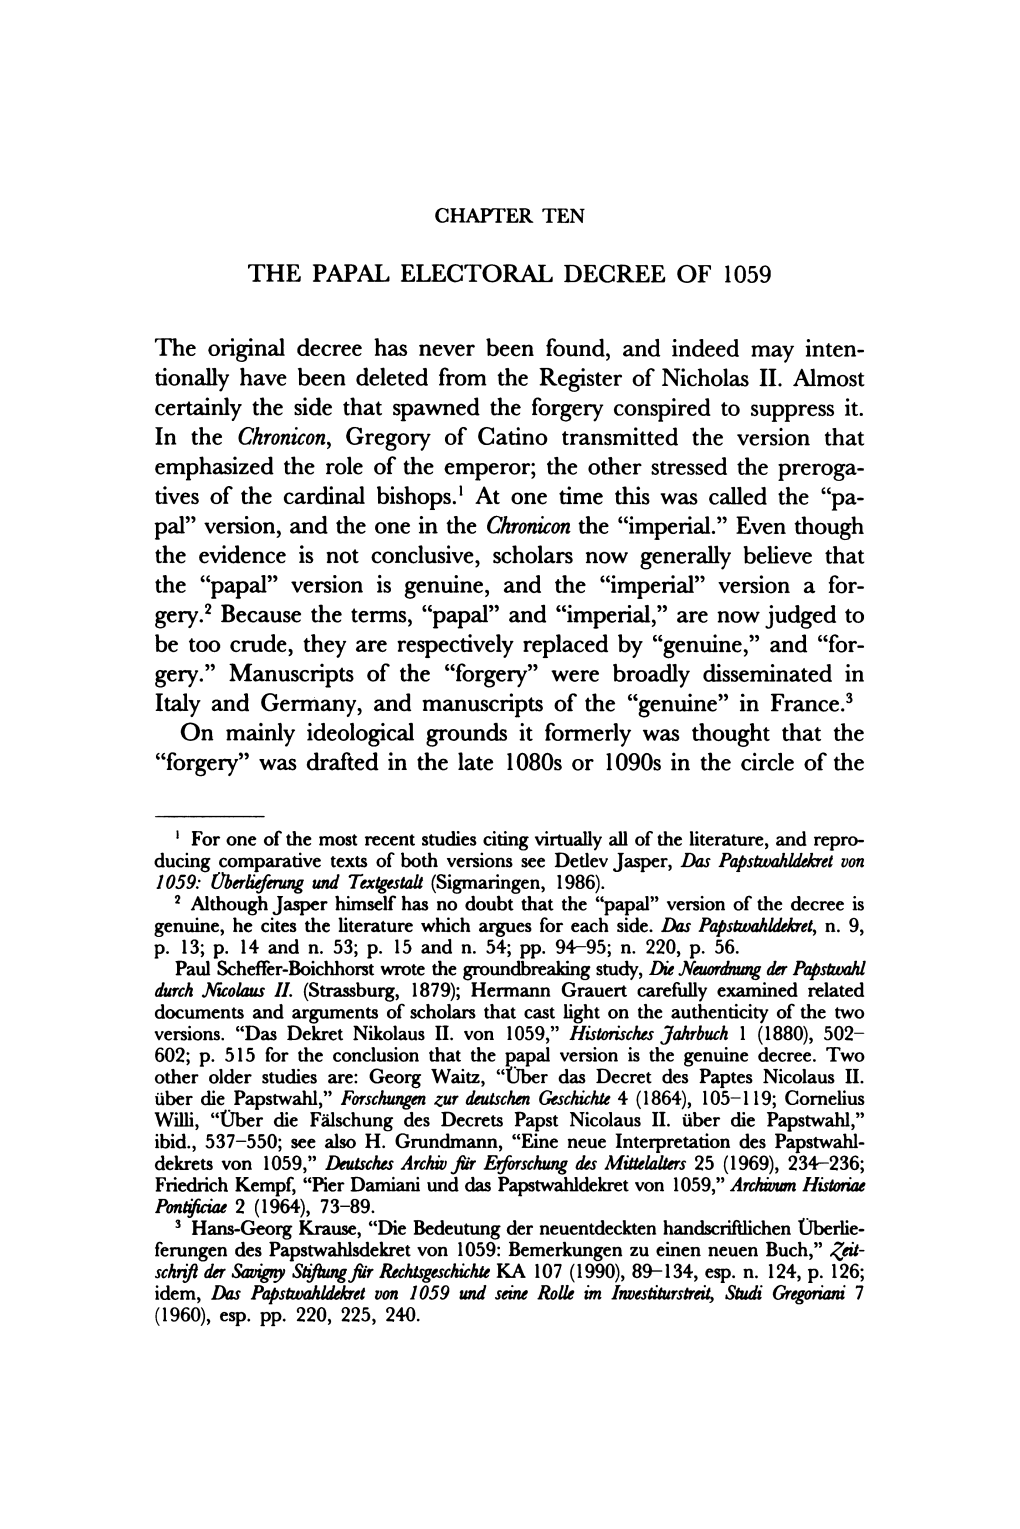 THE PAPAL ELECTORAL DECREE of 1059 the Original Decree